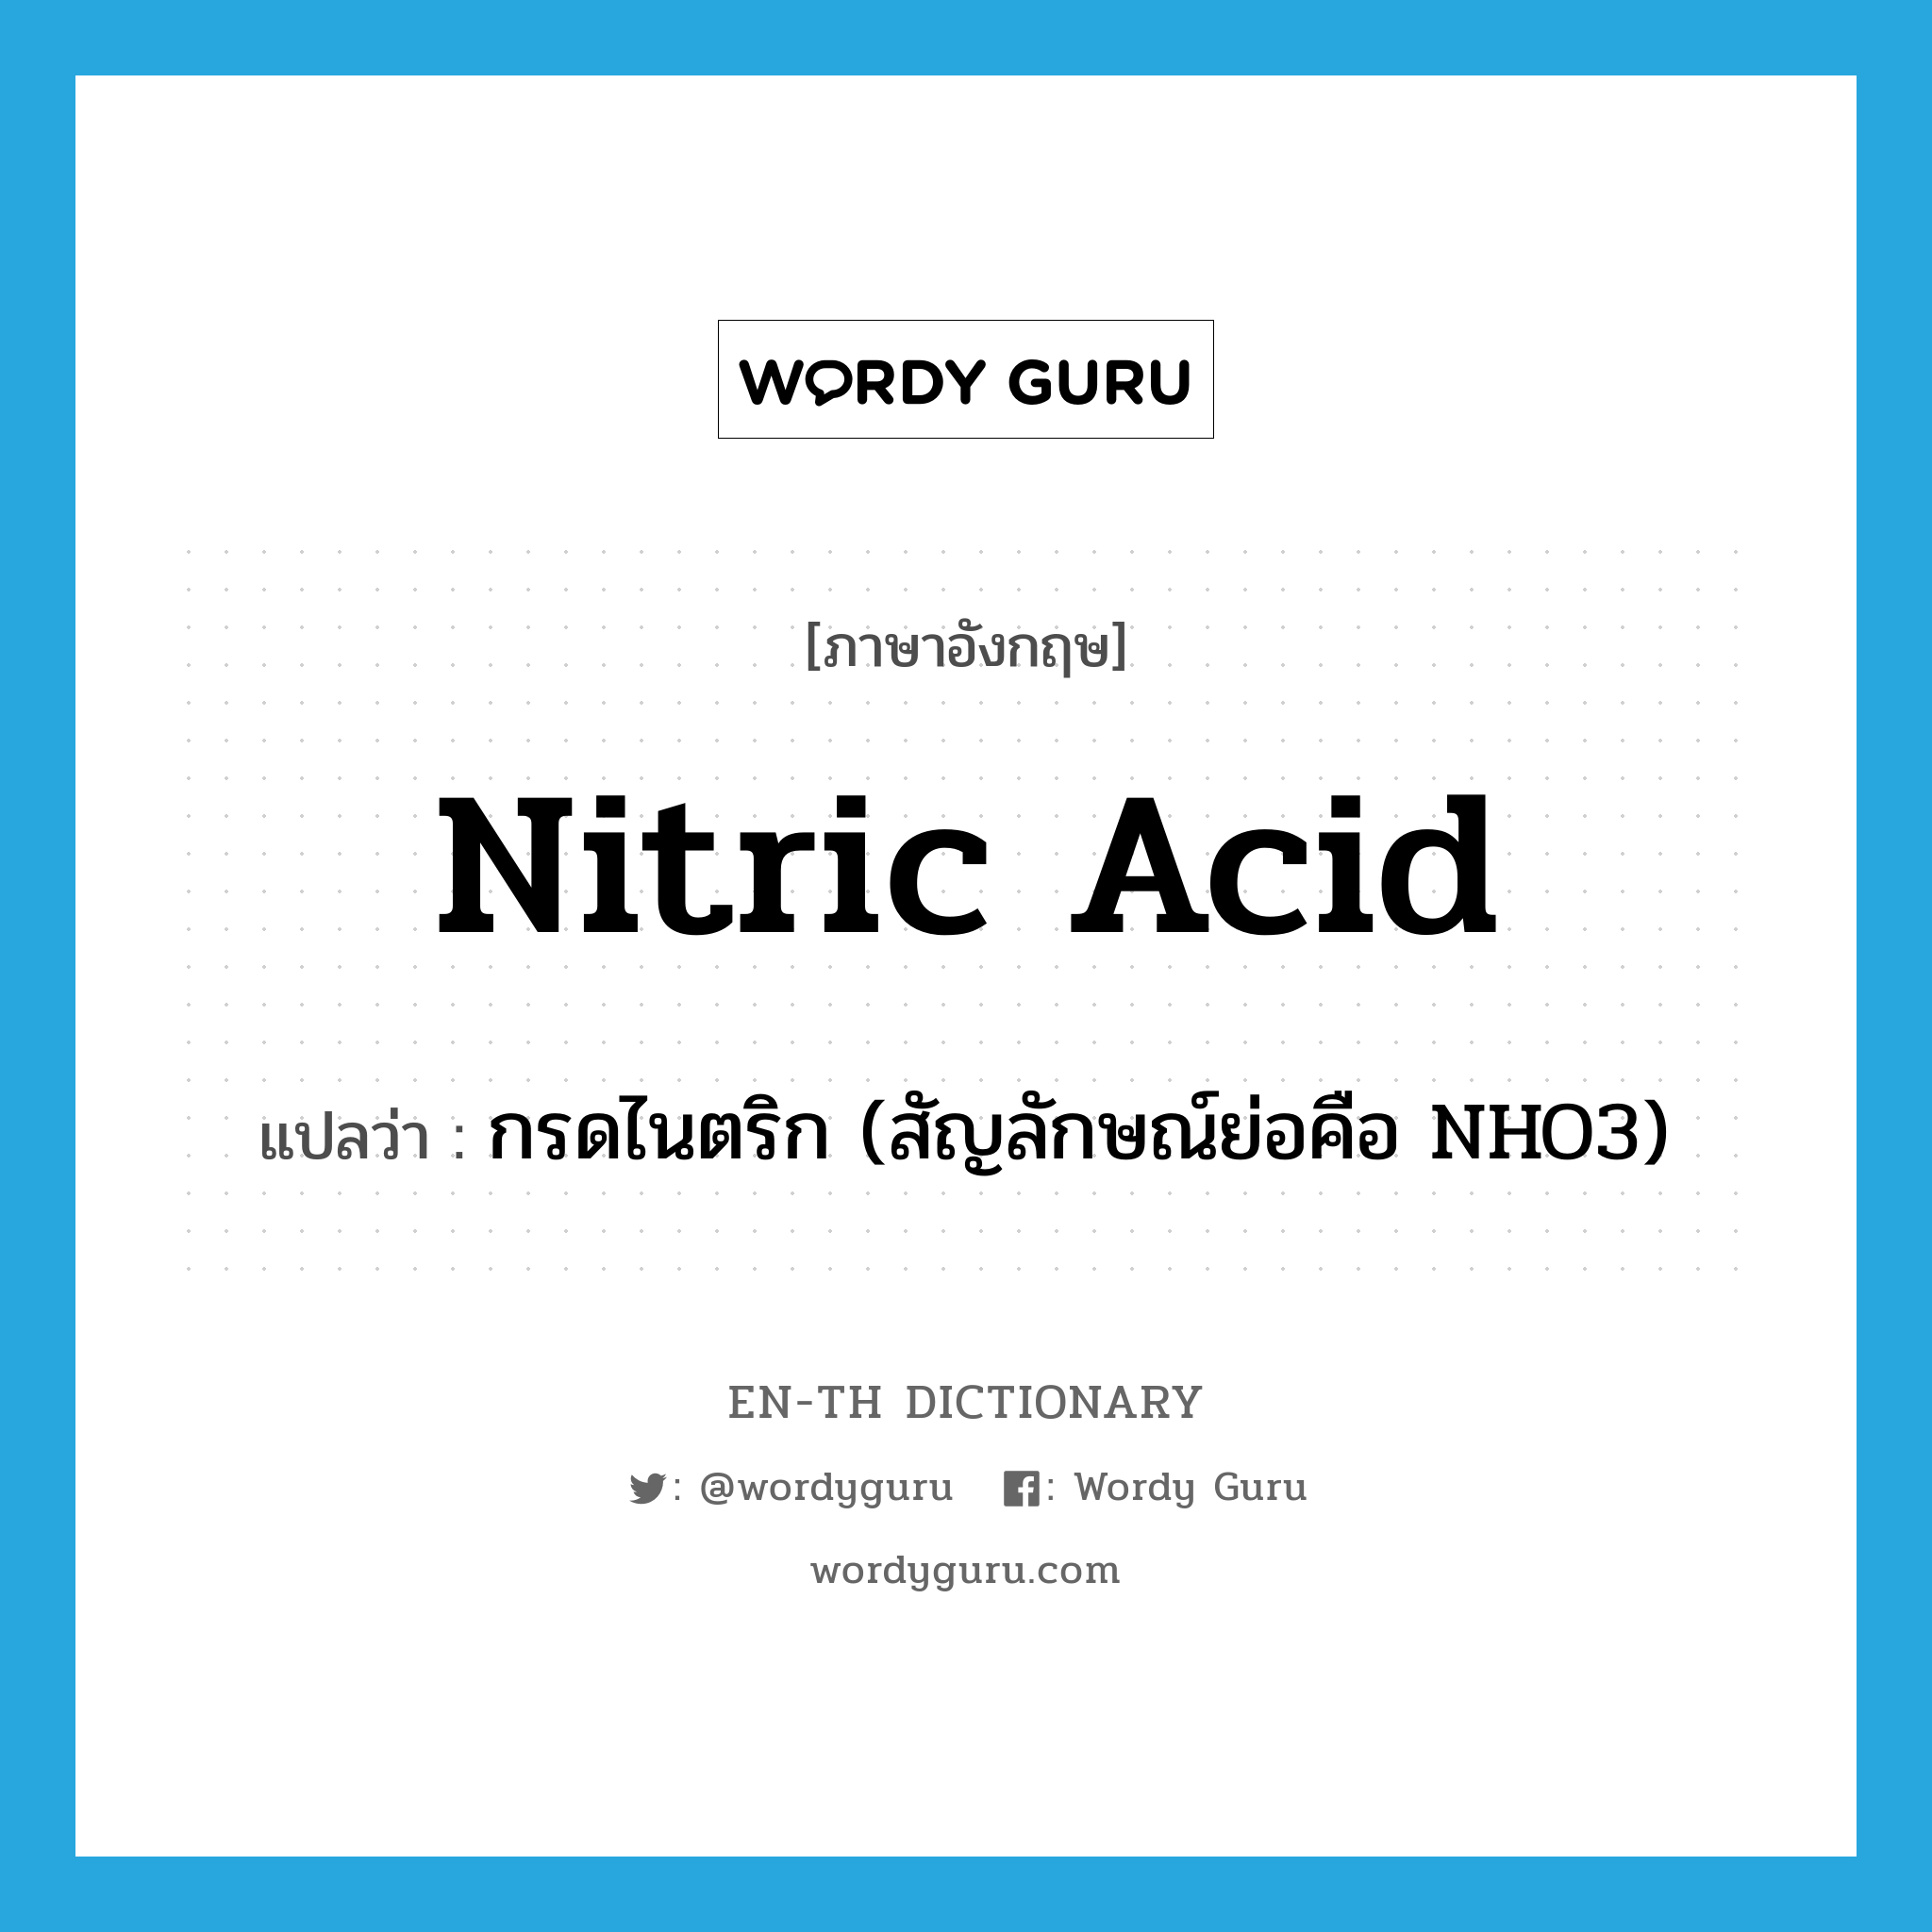 nitric acid แปลว่า?, คำศัพท์ภาษาอังกฤษ nitric acid แปลว่า กรดไนตริก (สัญลักษณ์ย่อคือ NHO3) ประเภท N หมวด N